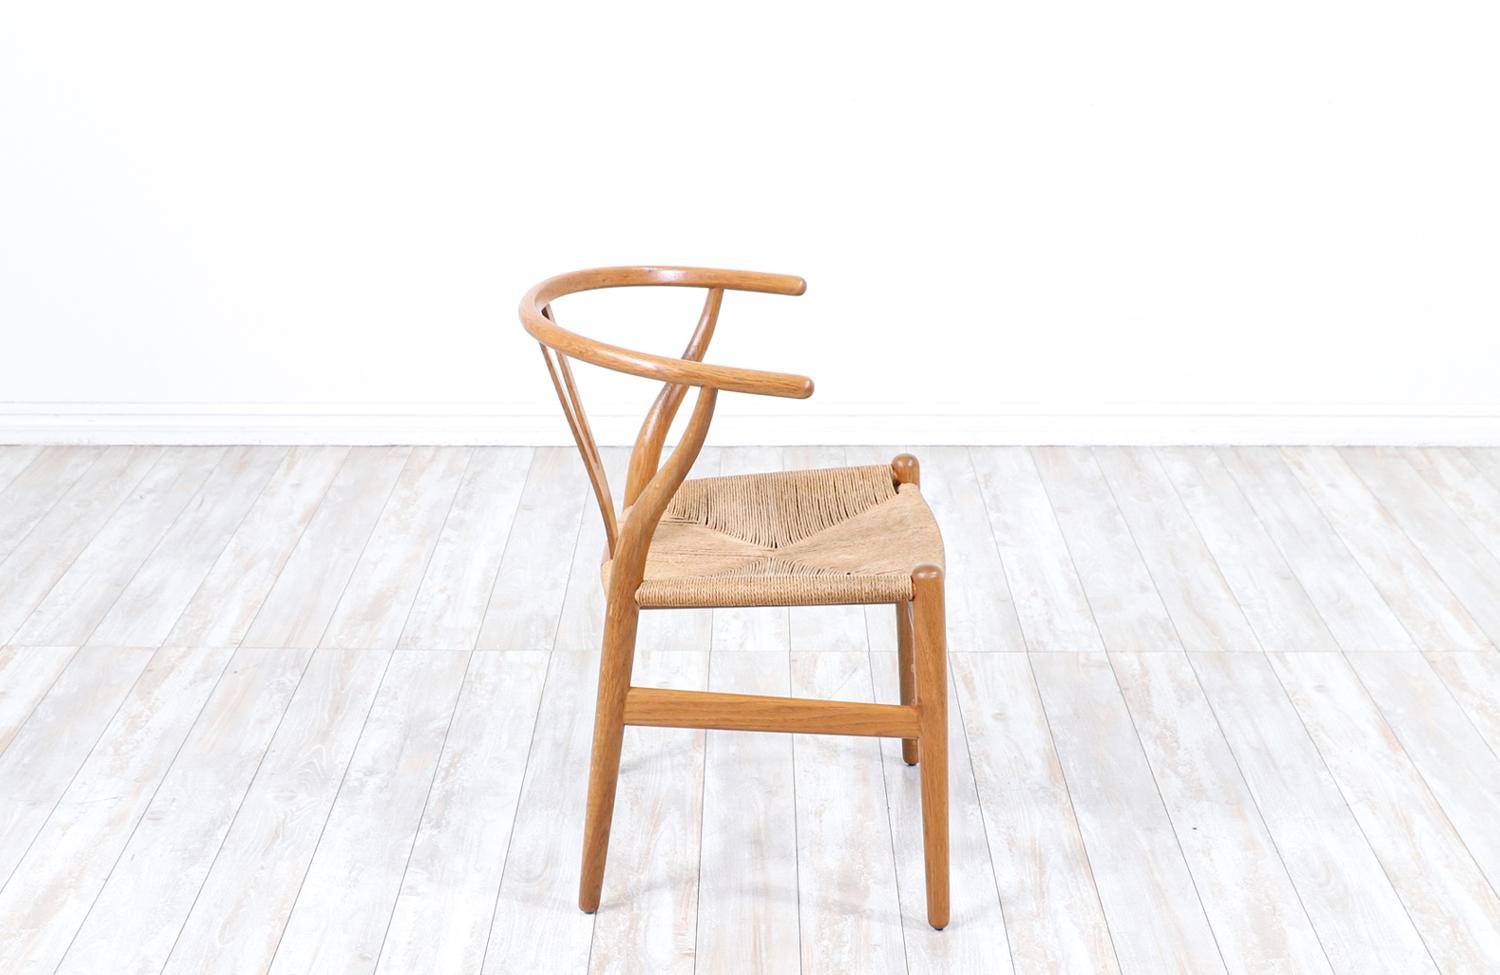 Danish Iconic Hans J. Wegner “Wishbone” Oak Arm Chair for Carl Hansen & Søn For Sale